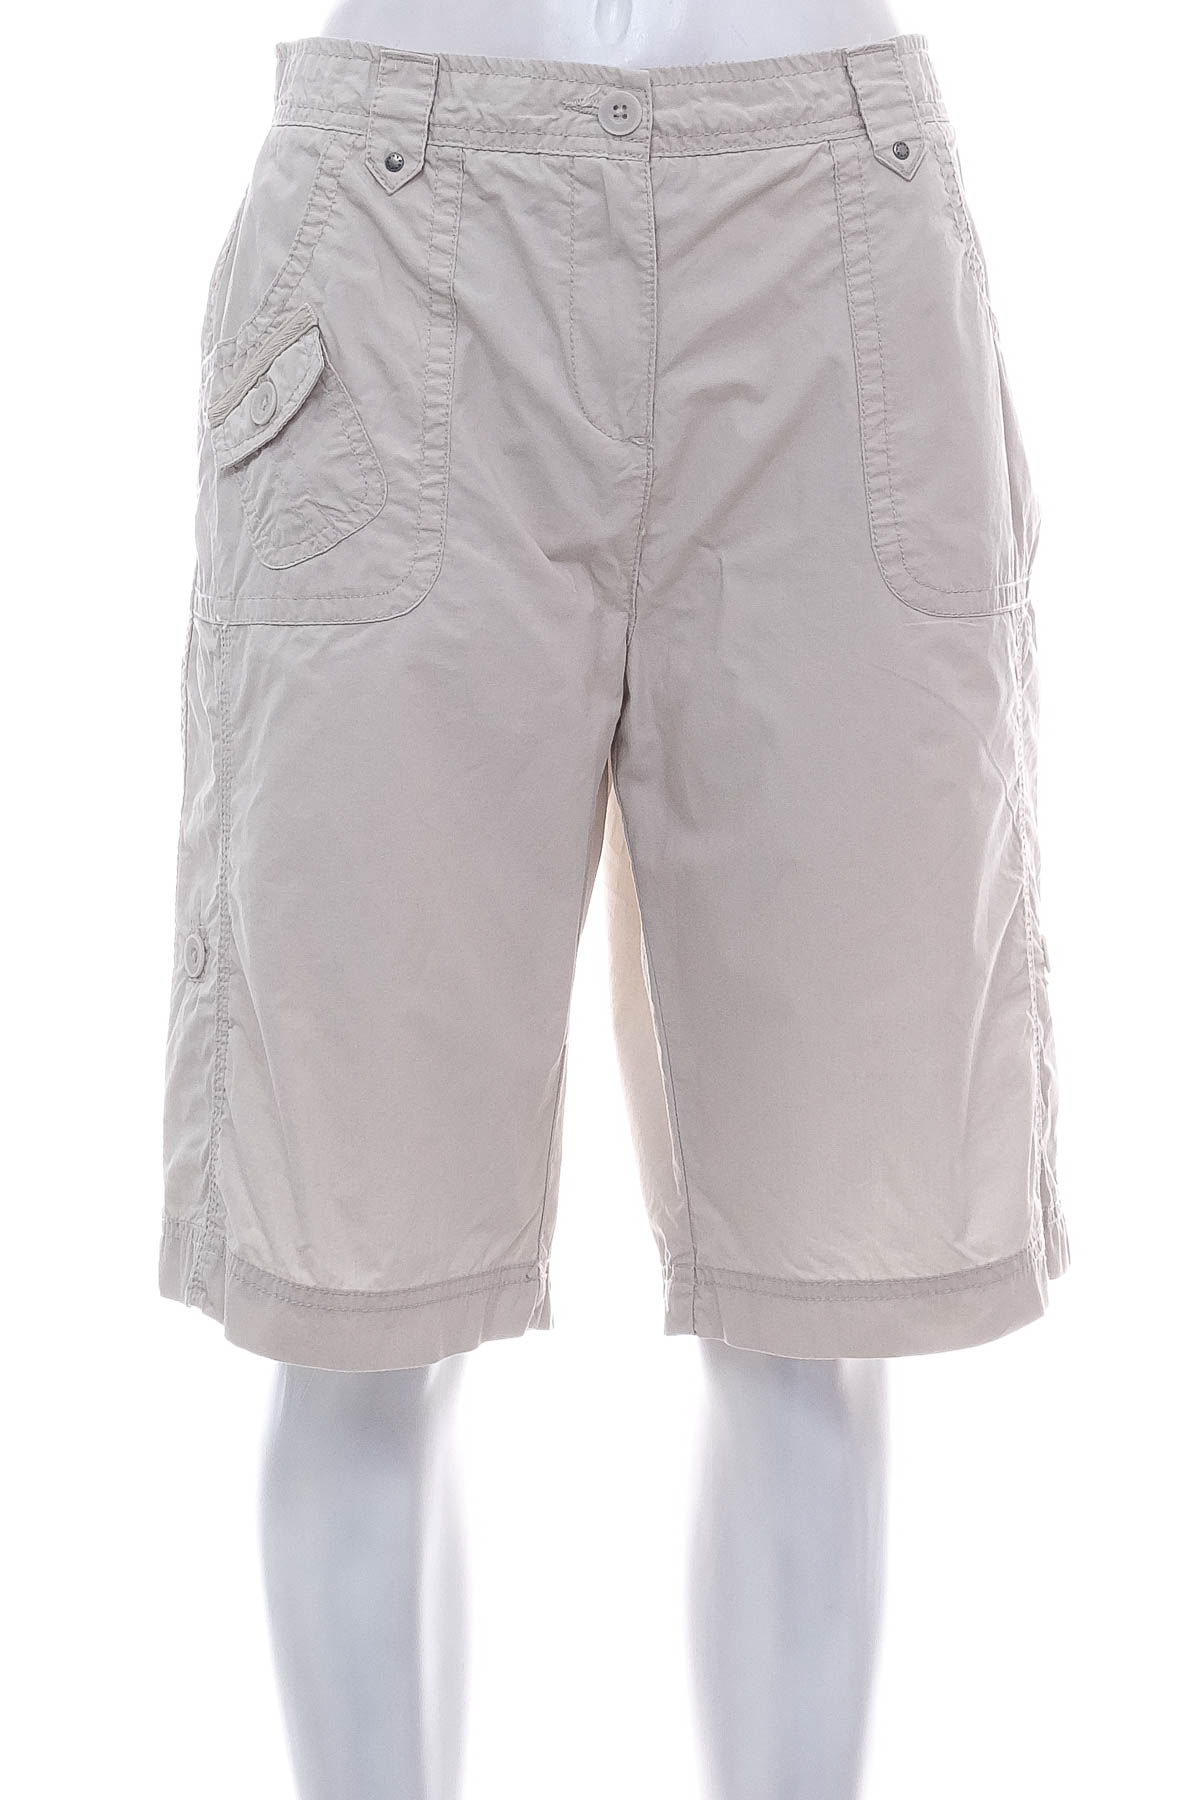 Female shorts - CANDA - 0